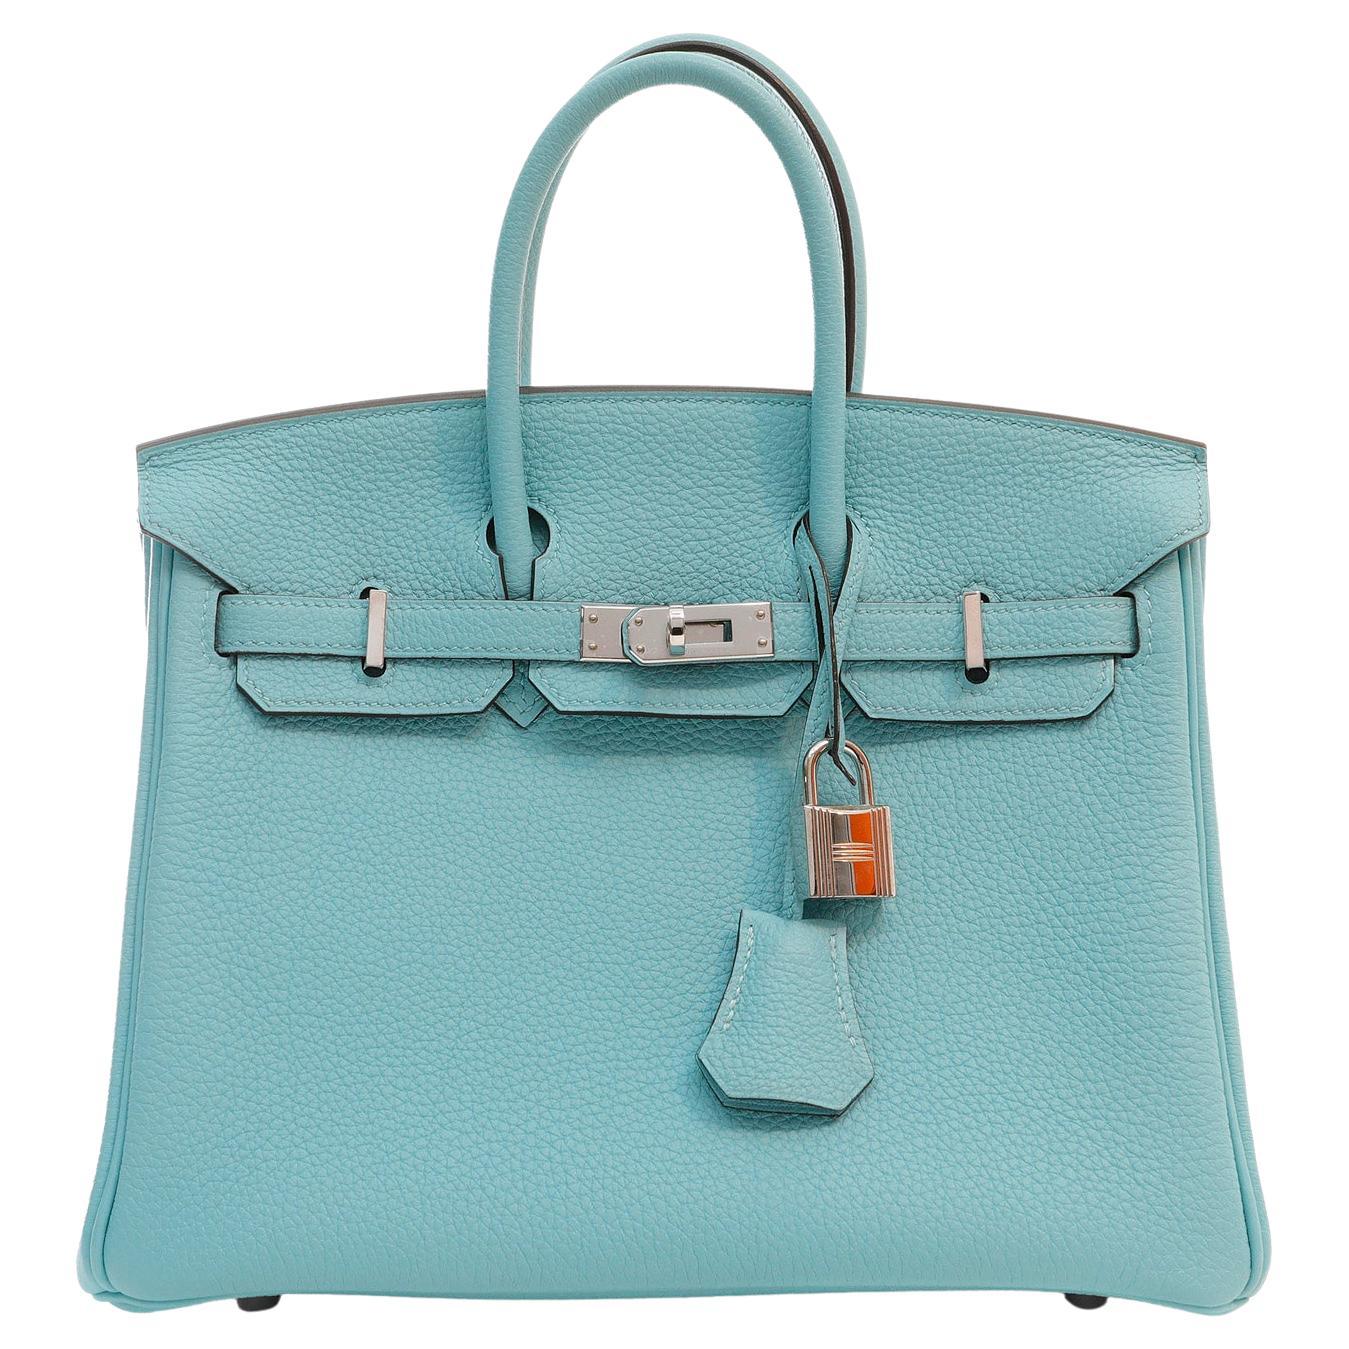 Hermès Robin’s Egg Blue Togo Leather 25 cm Birkin Bag